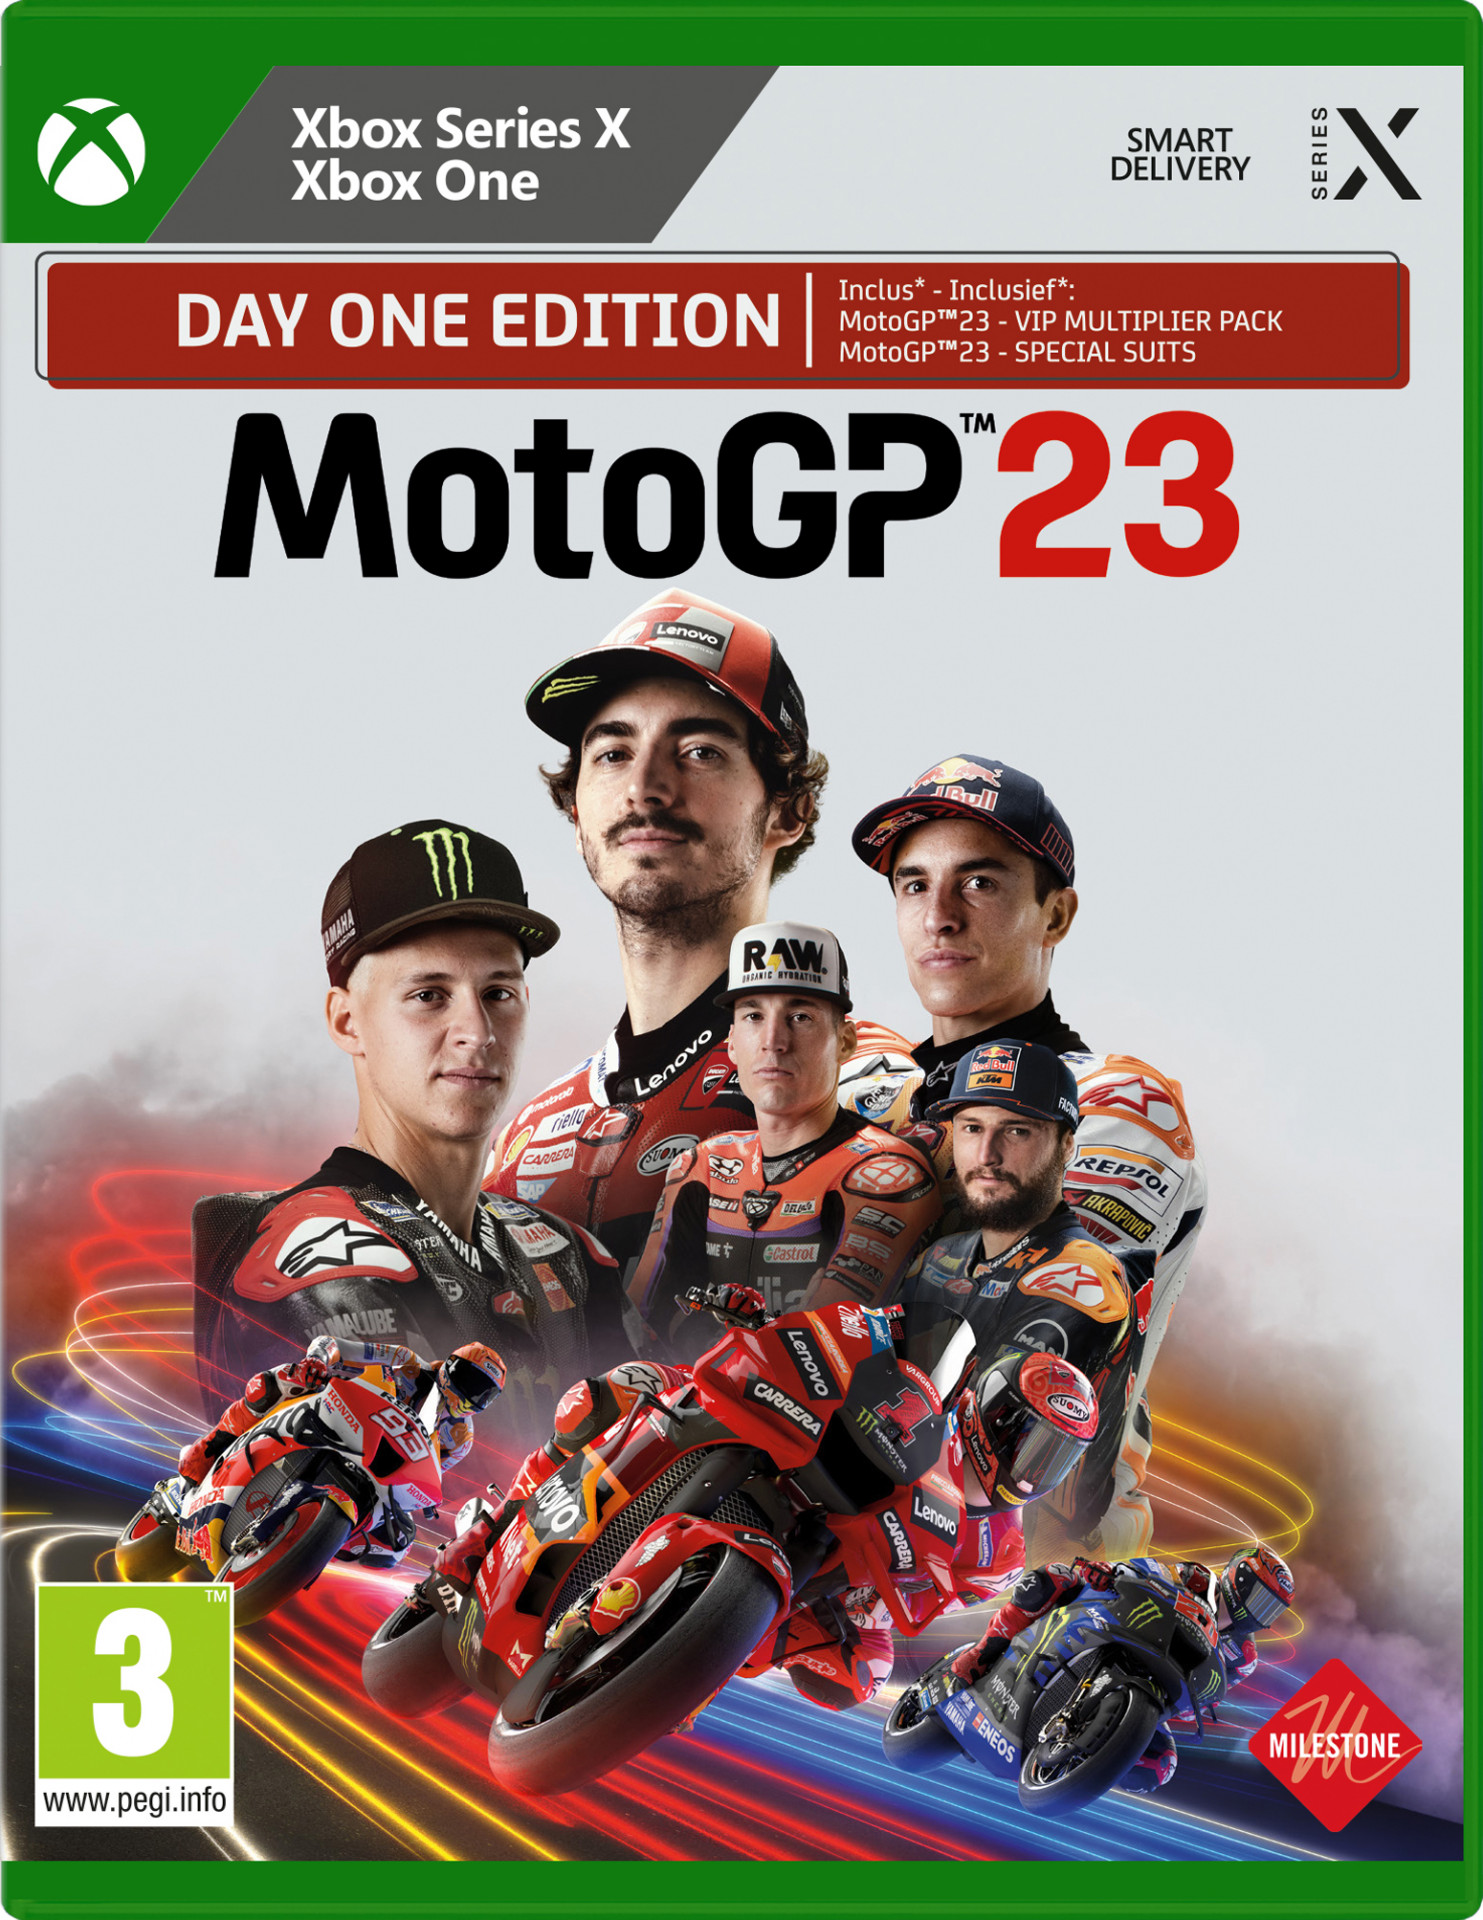 MotoGP 23 (Xbox Series X), Milestone